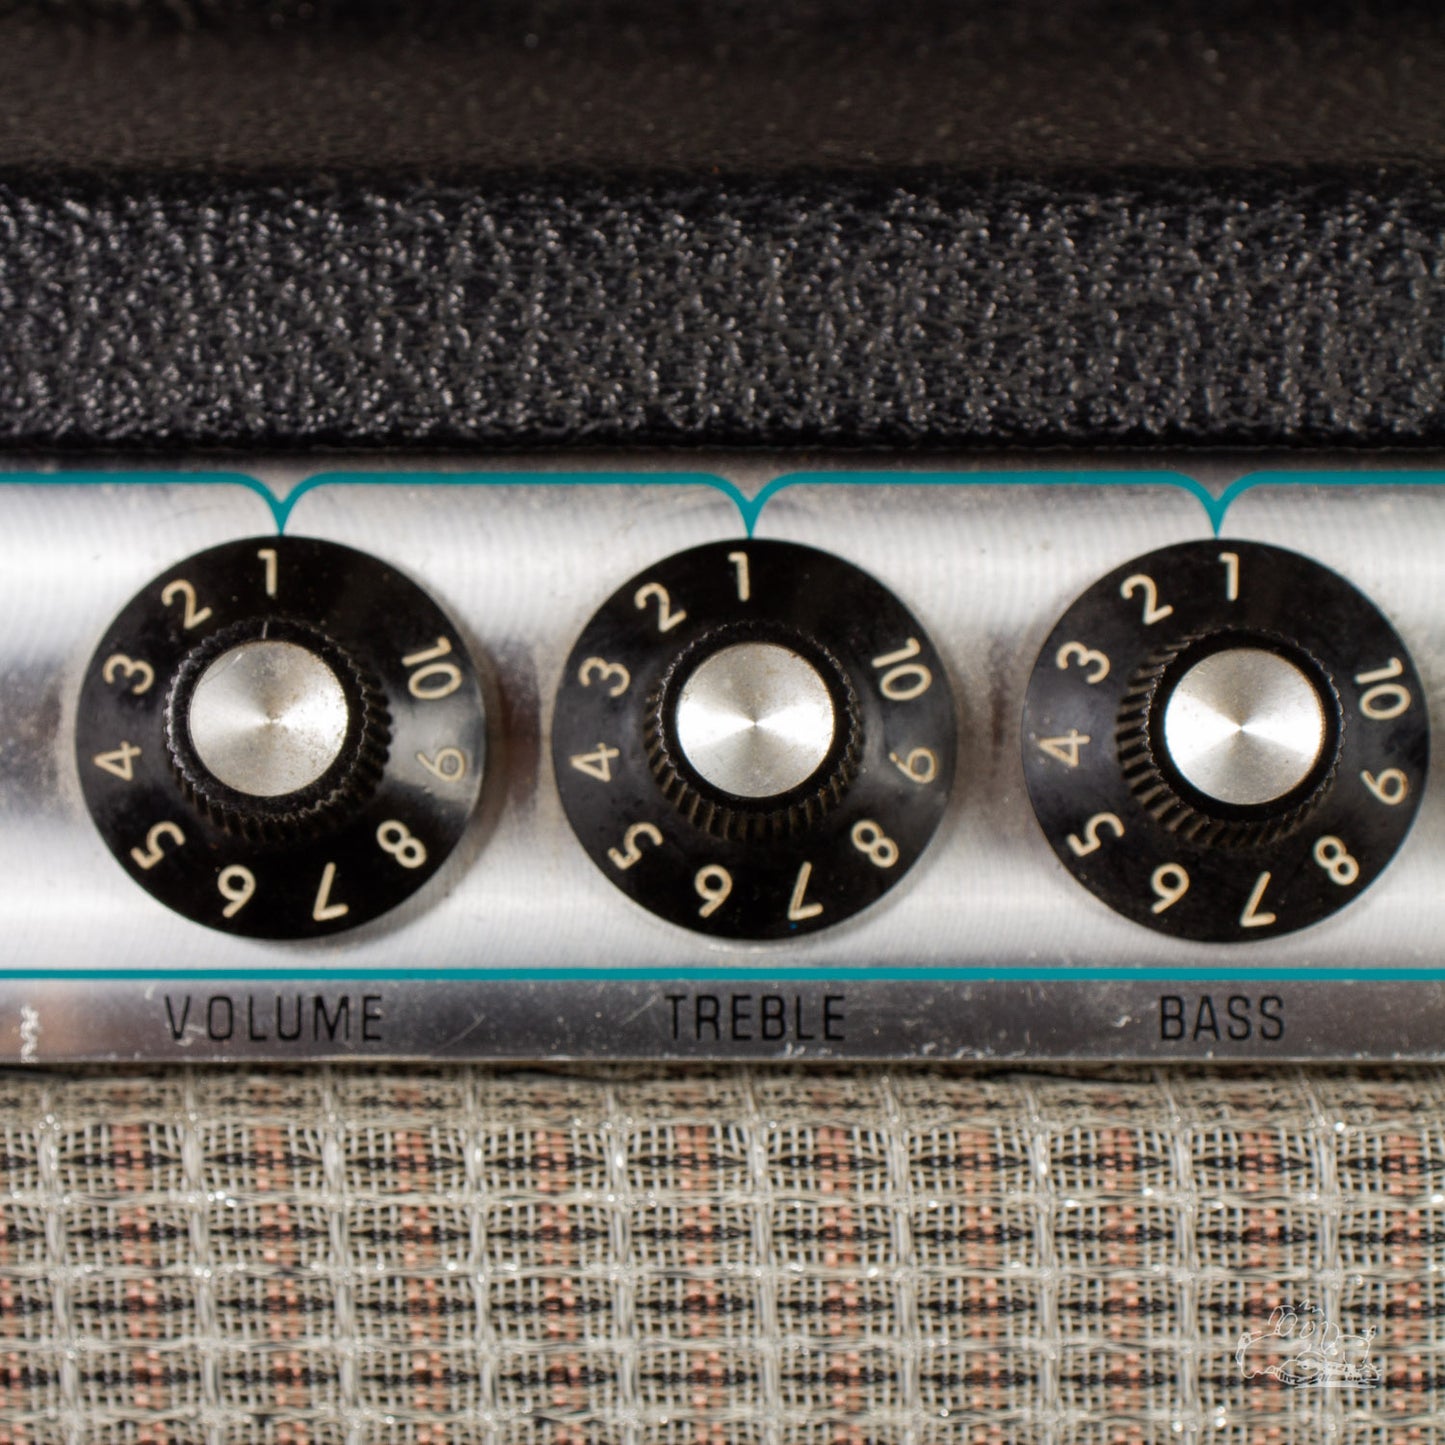 1976 Fender Deluxe Reverb Amplifier